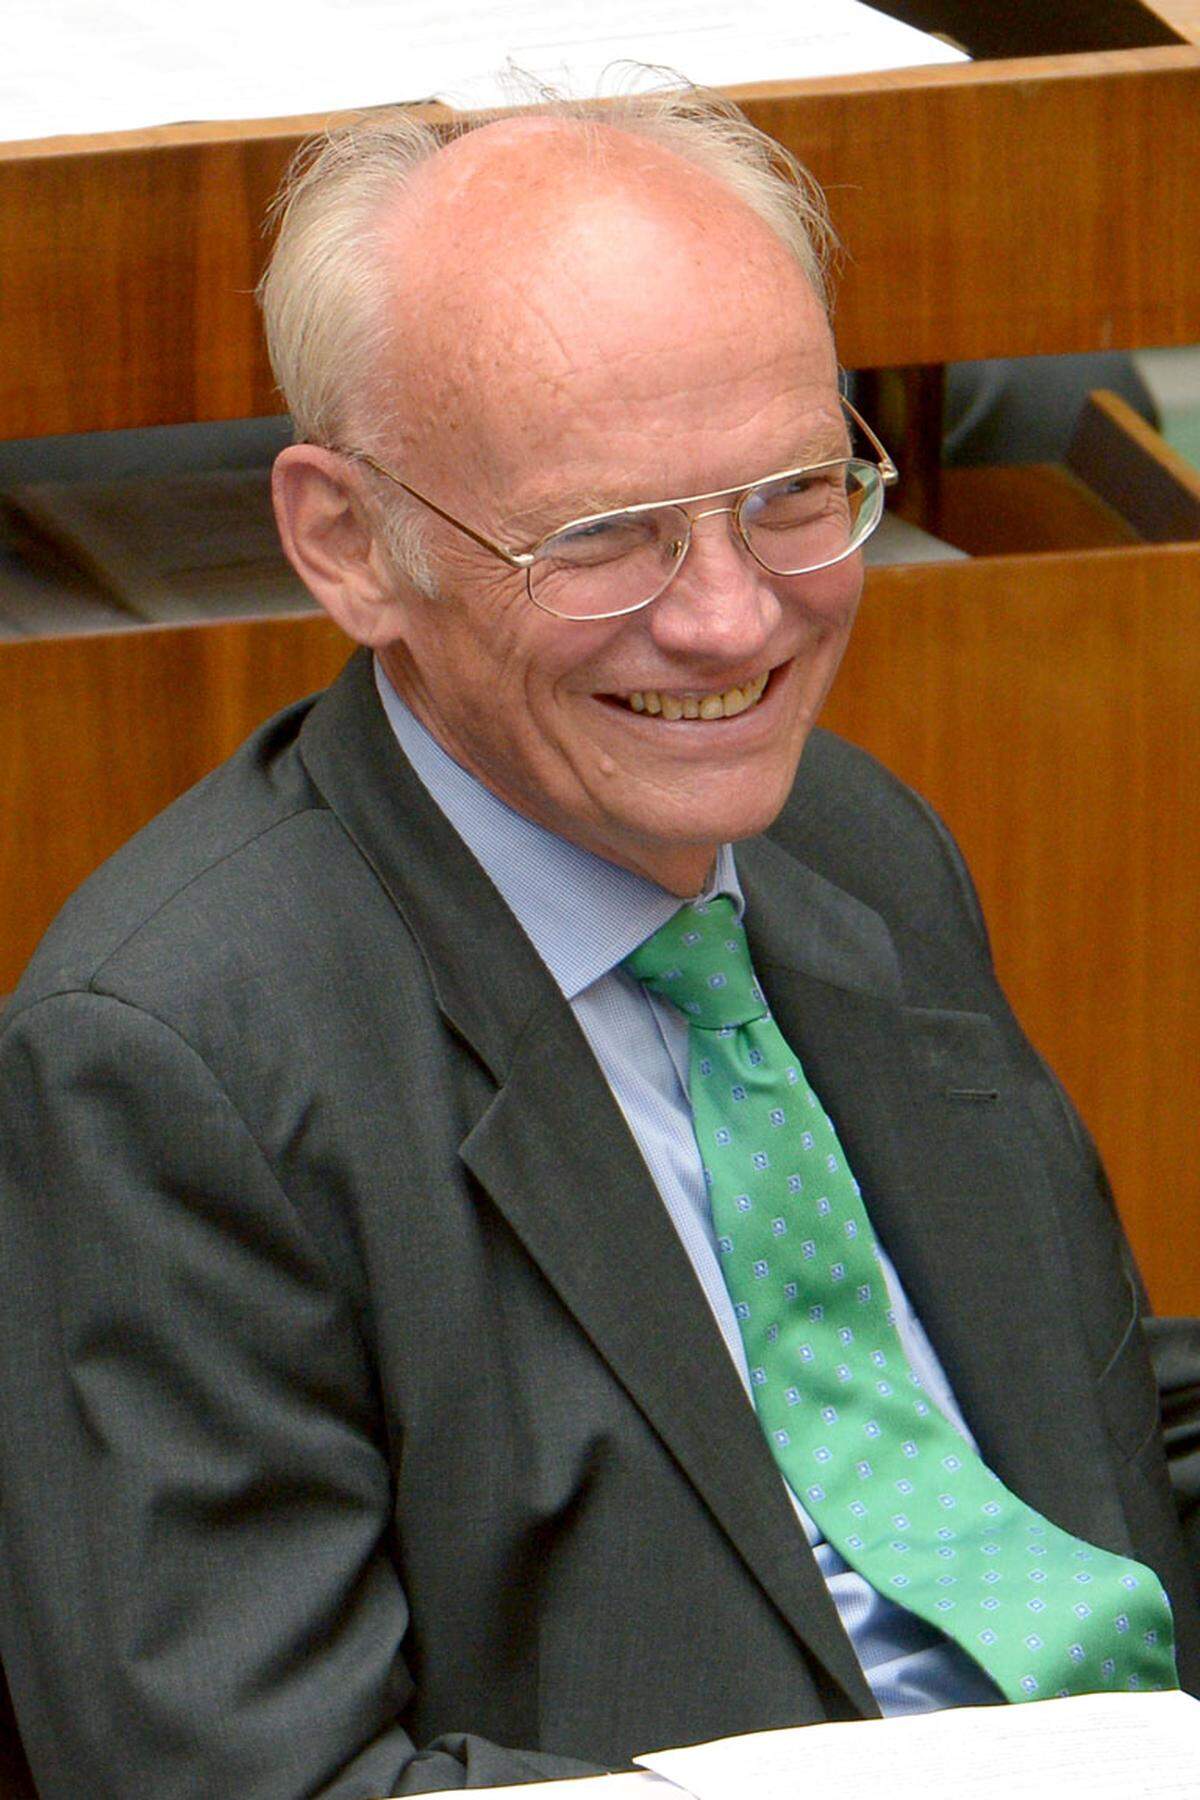 „Wehmut ist keine dabei“, der ÖVP-Finanzsprecher Günter Stummvoll verabschiedet sich nach 33 Jahren – damals noch als Bundesrat – aus dem Parlament. Er sieht den Abschied „mit der Gelassenheit des Alters“. Lediglich die Führung des Finanzausschusses abgeben zu müssen tut ihm leid.